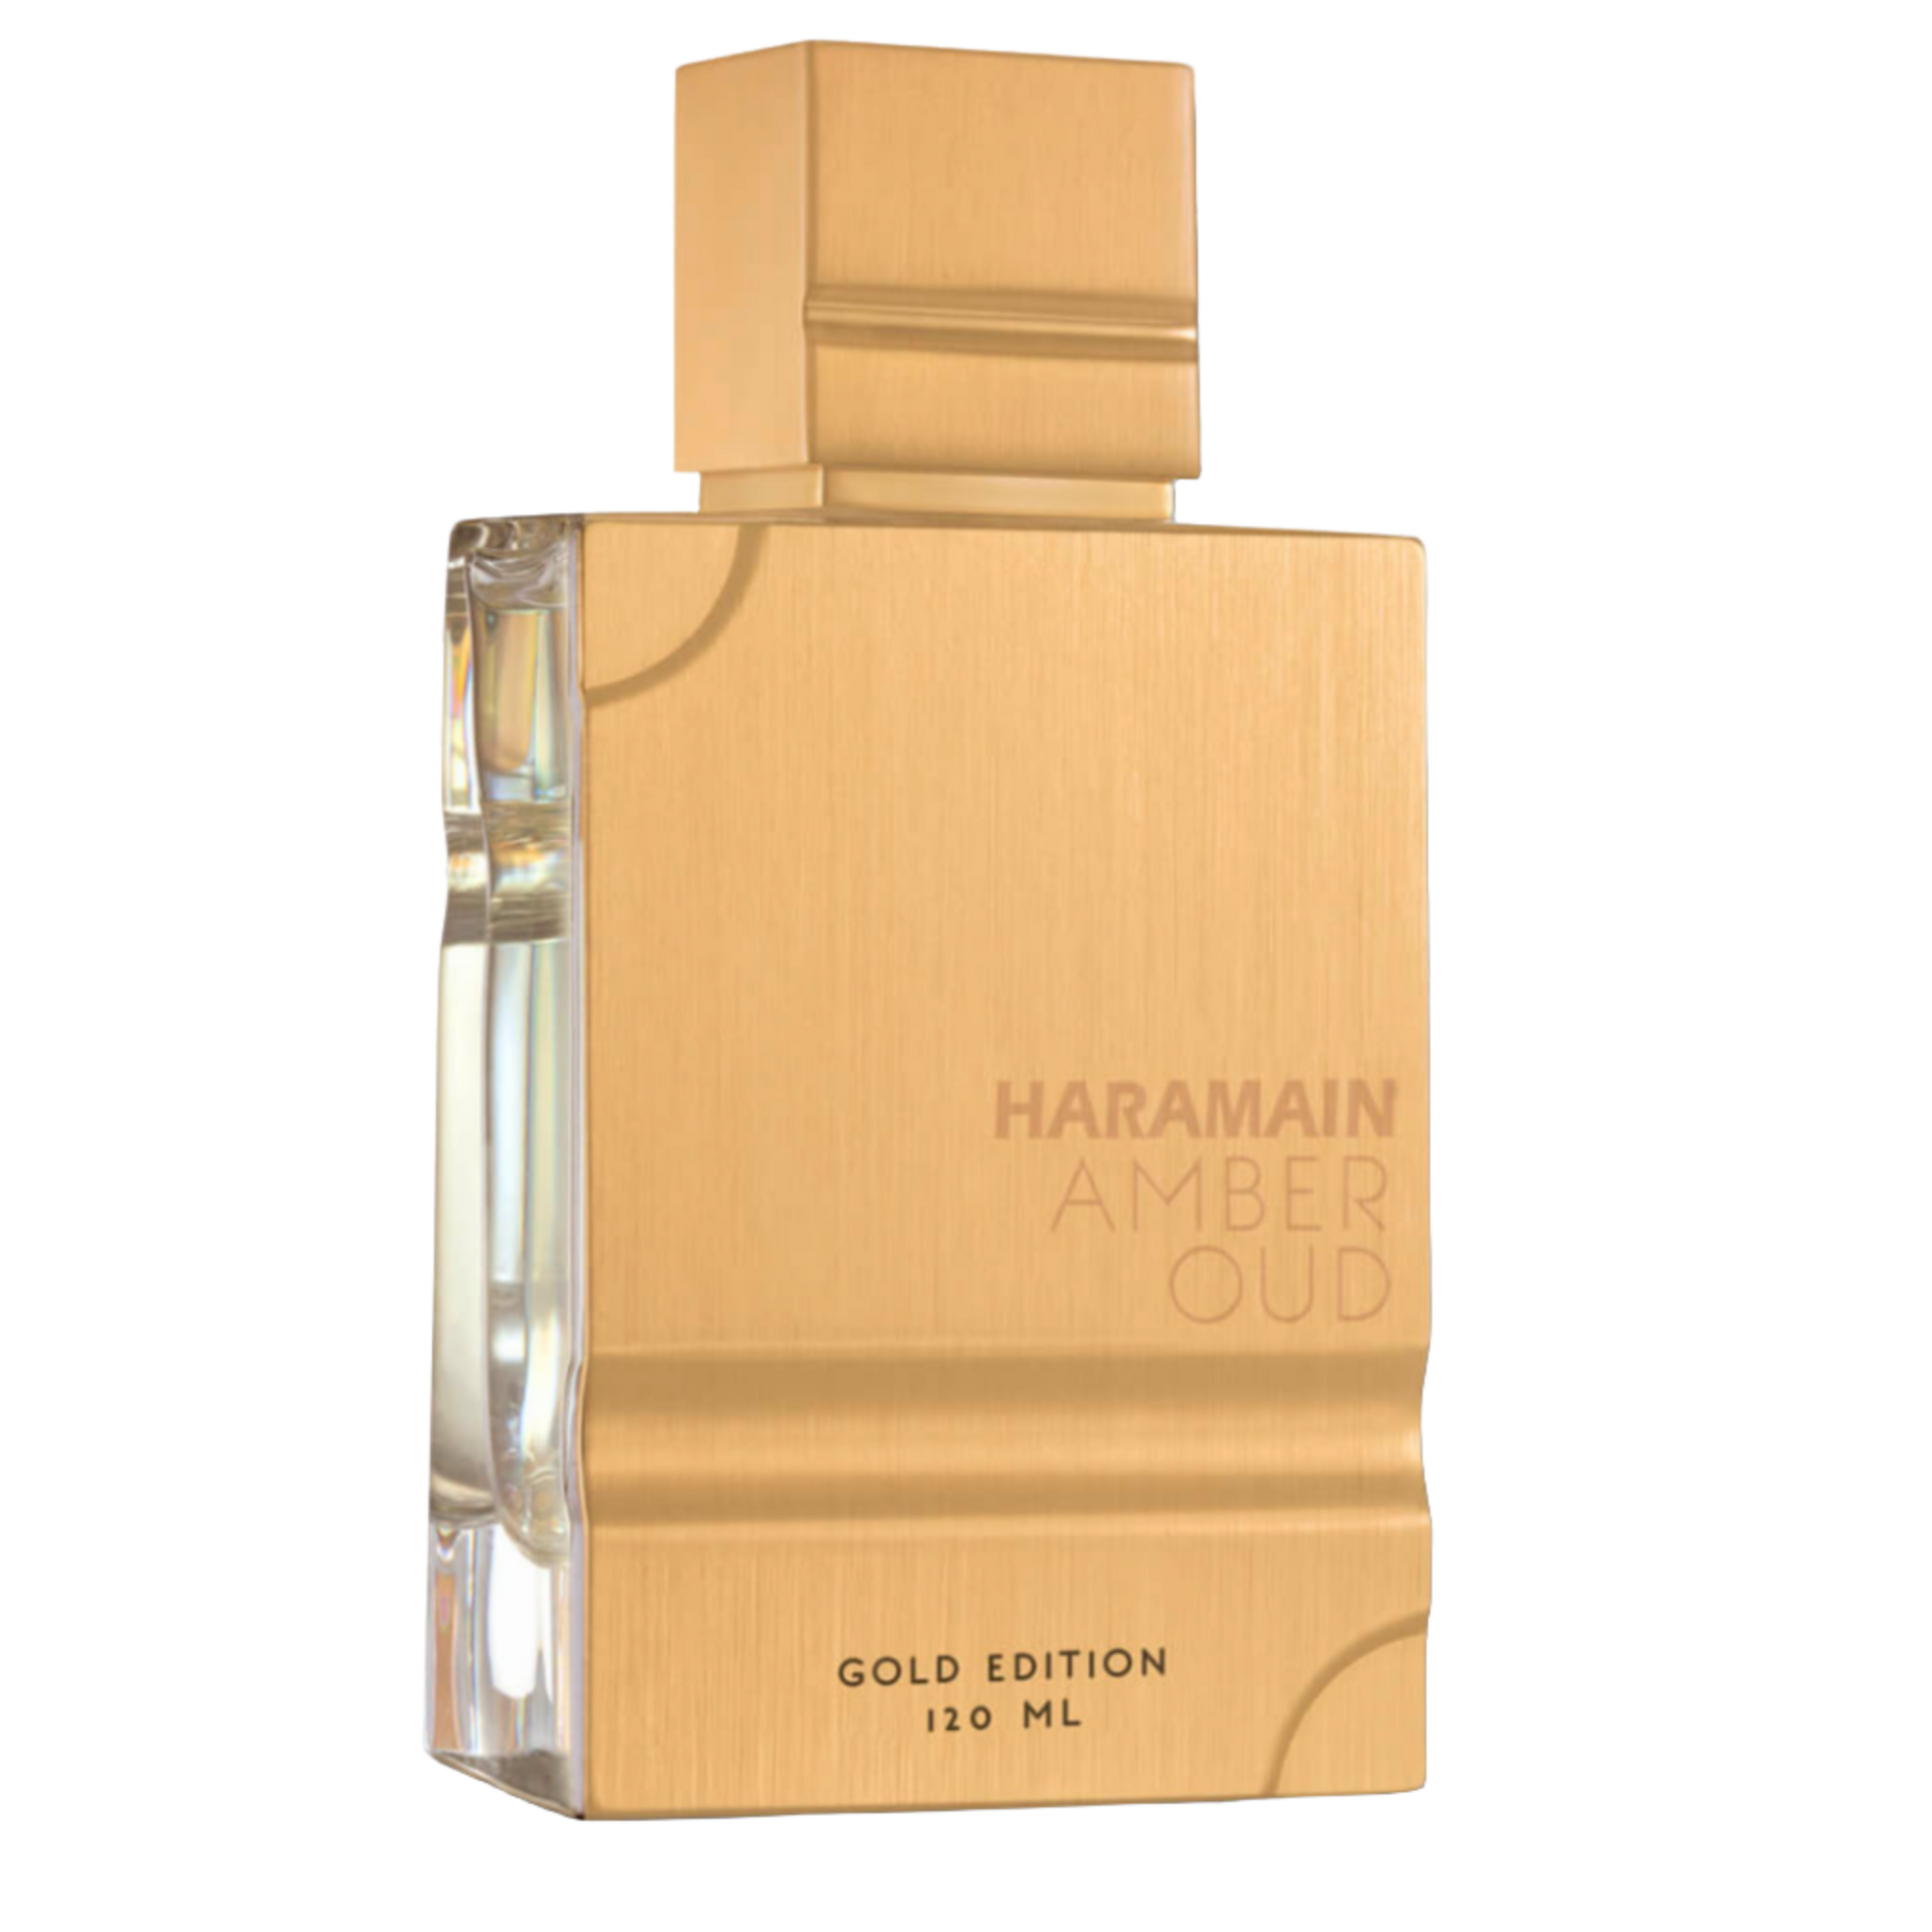 Al Haramain Amber Oud Gold Edition 120ml Eau De Parfum for Men and Women transparent background